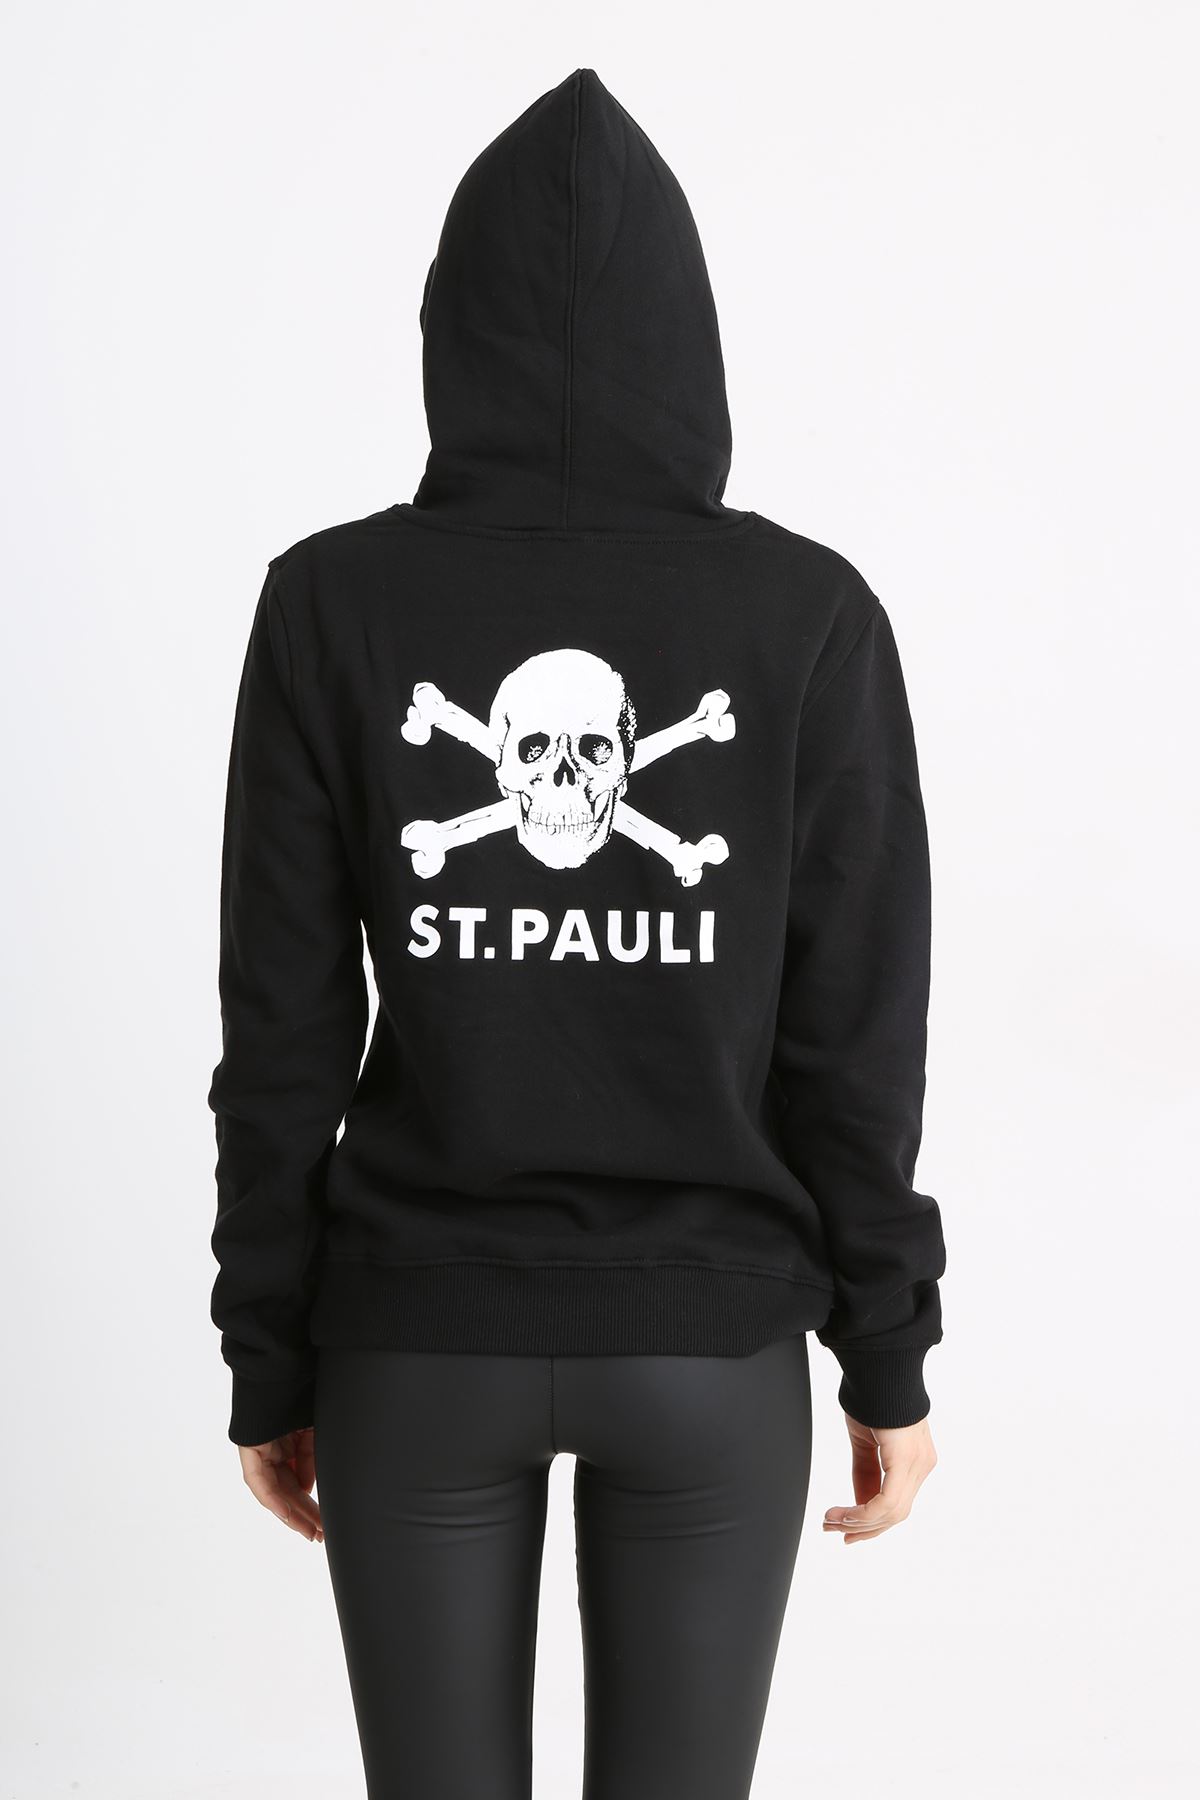  St. Pauli Siyah Kapüşonlu Ekru Kuru Kafa Baskılı Örme Kadın Sweatshirt